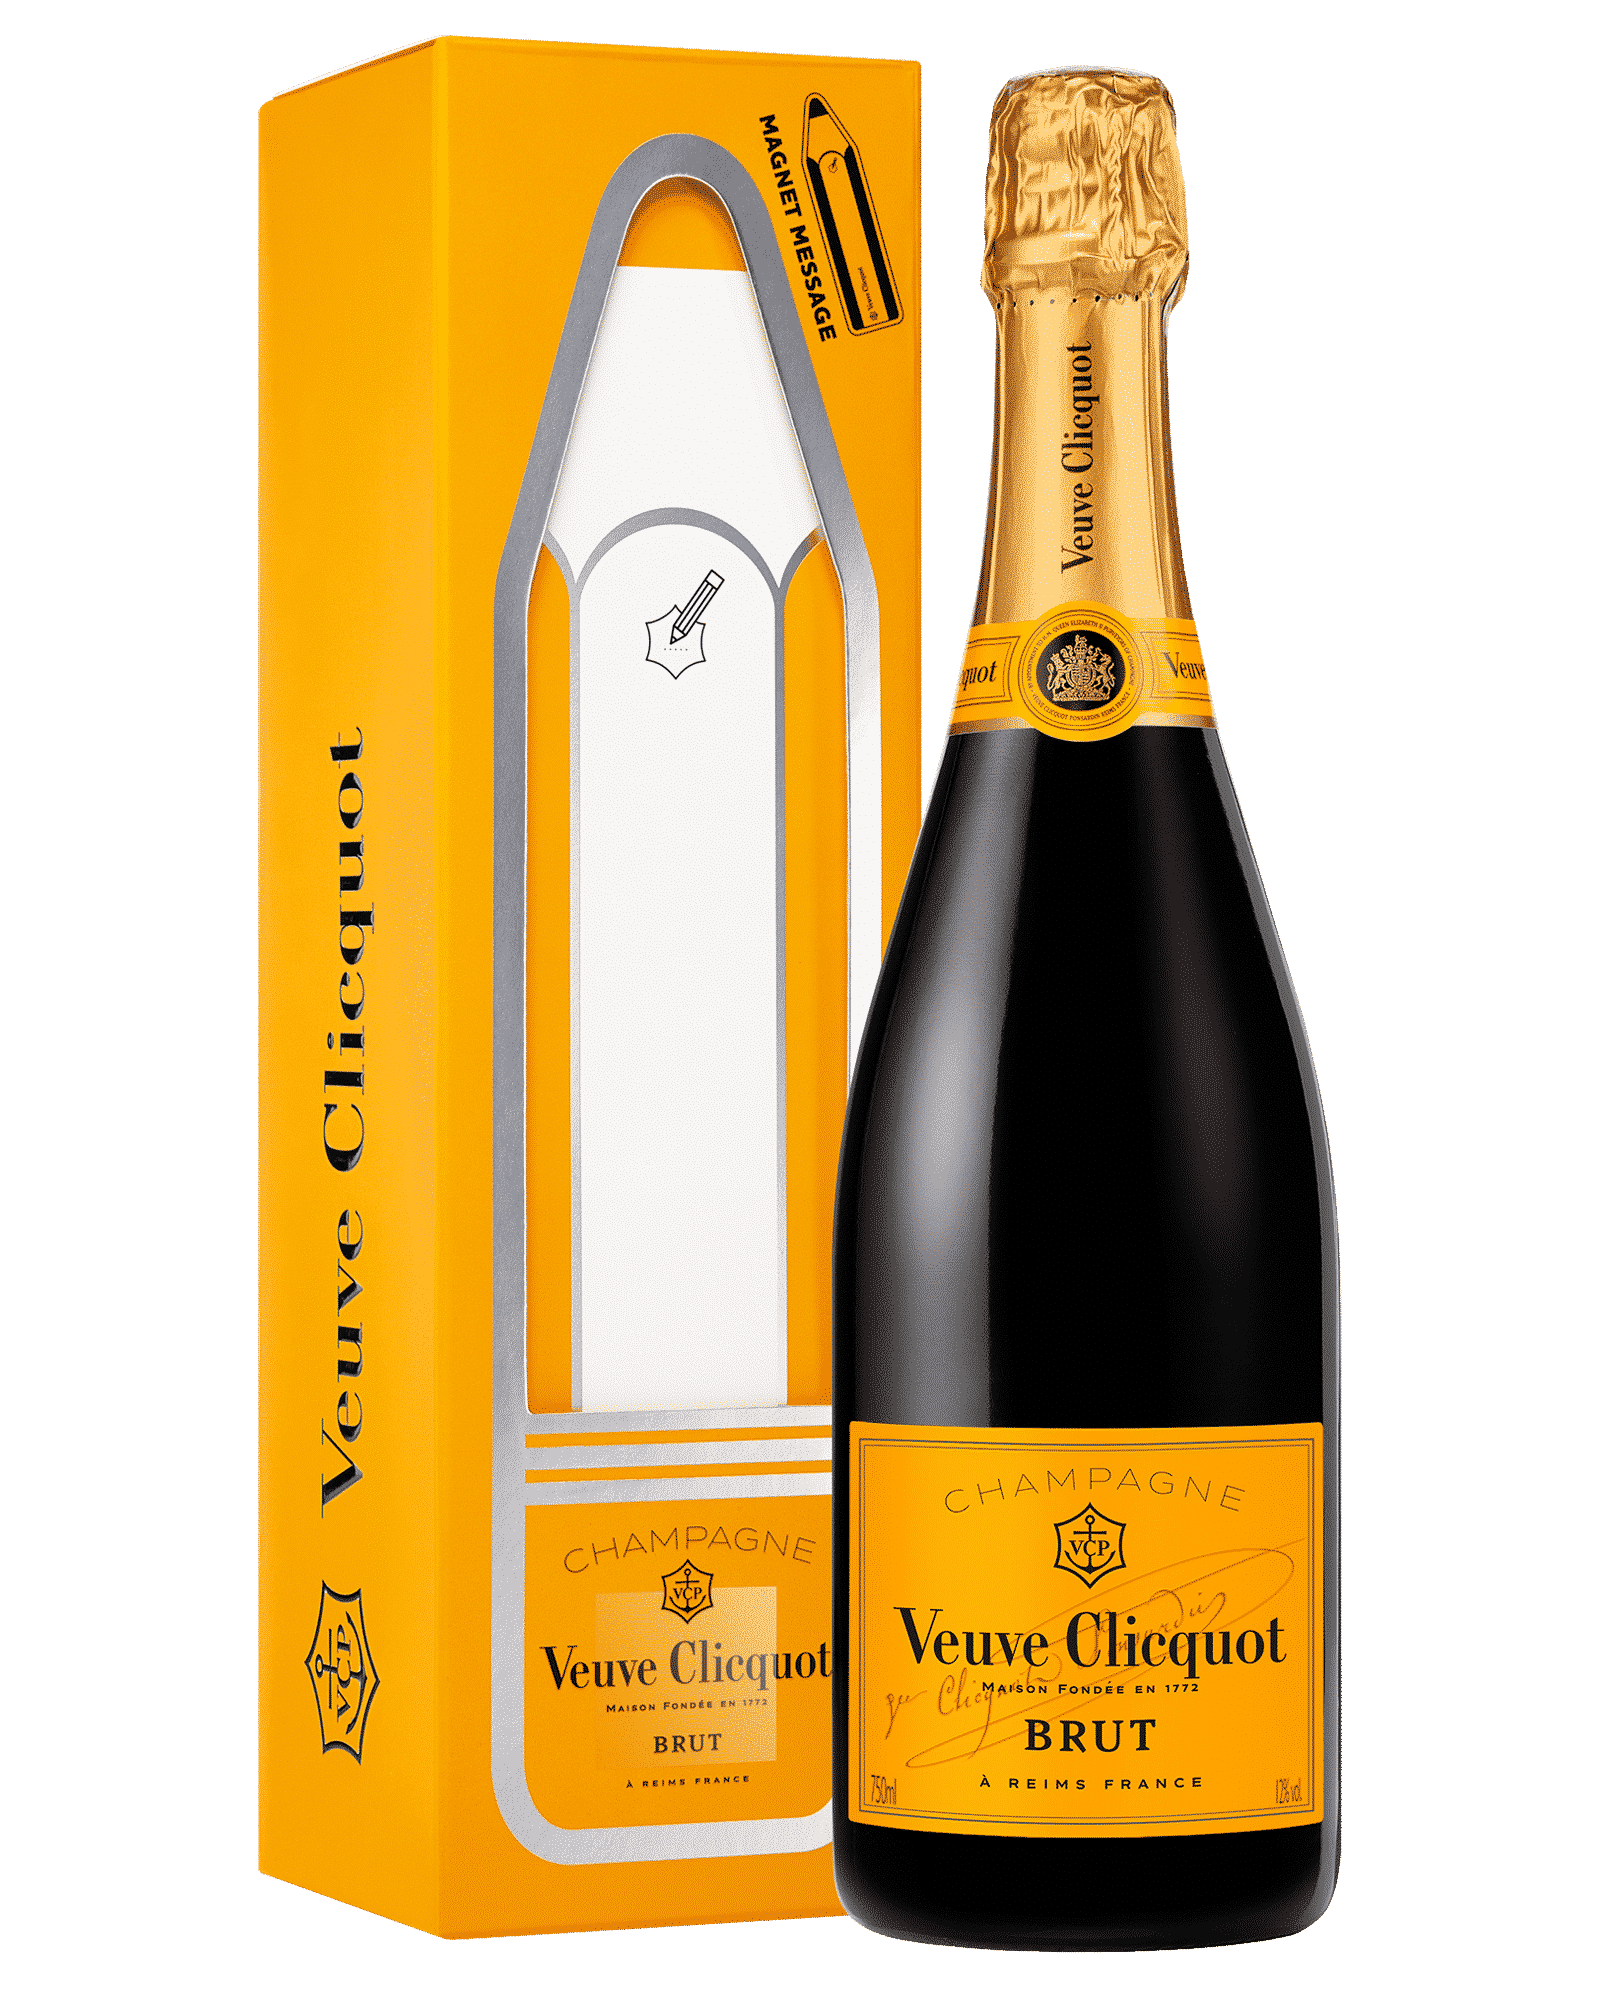 Шампанское клико купить в москве. Шампанское Veuve Clicquot, Brut, Gift Box Magnet message 0,75 л. Шампанское Veuve Clicquot, Brut. Вдова Клико Понсардин брют. Просекко вдова Клико.